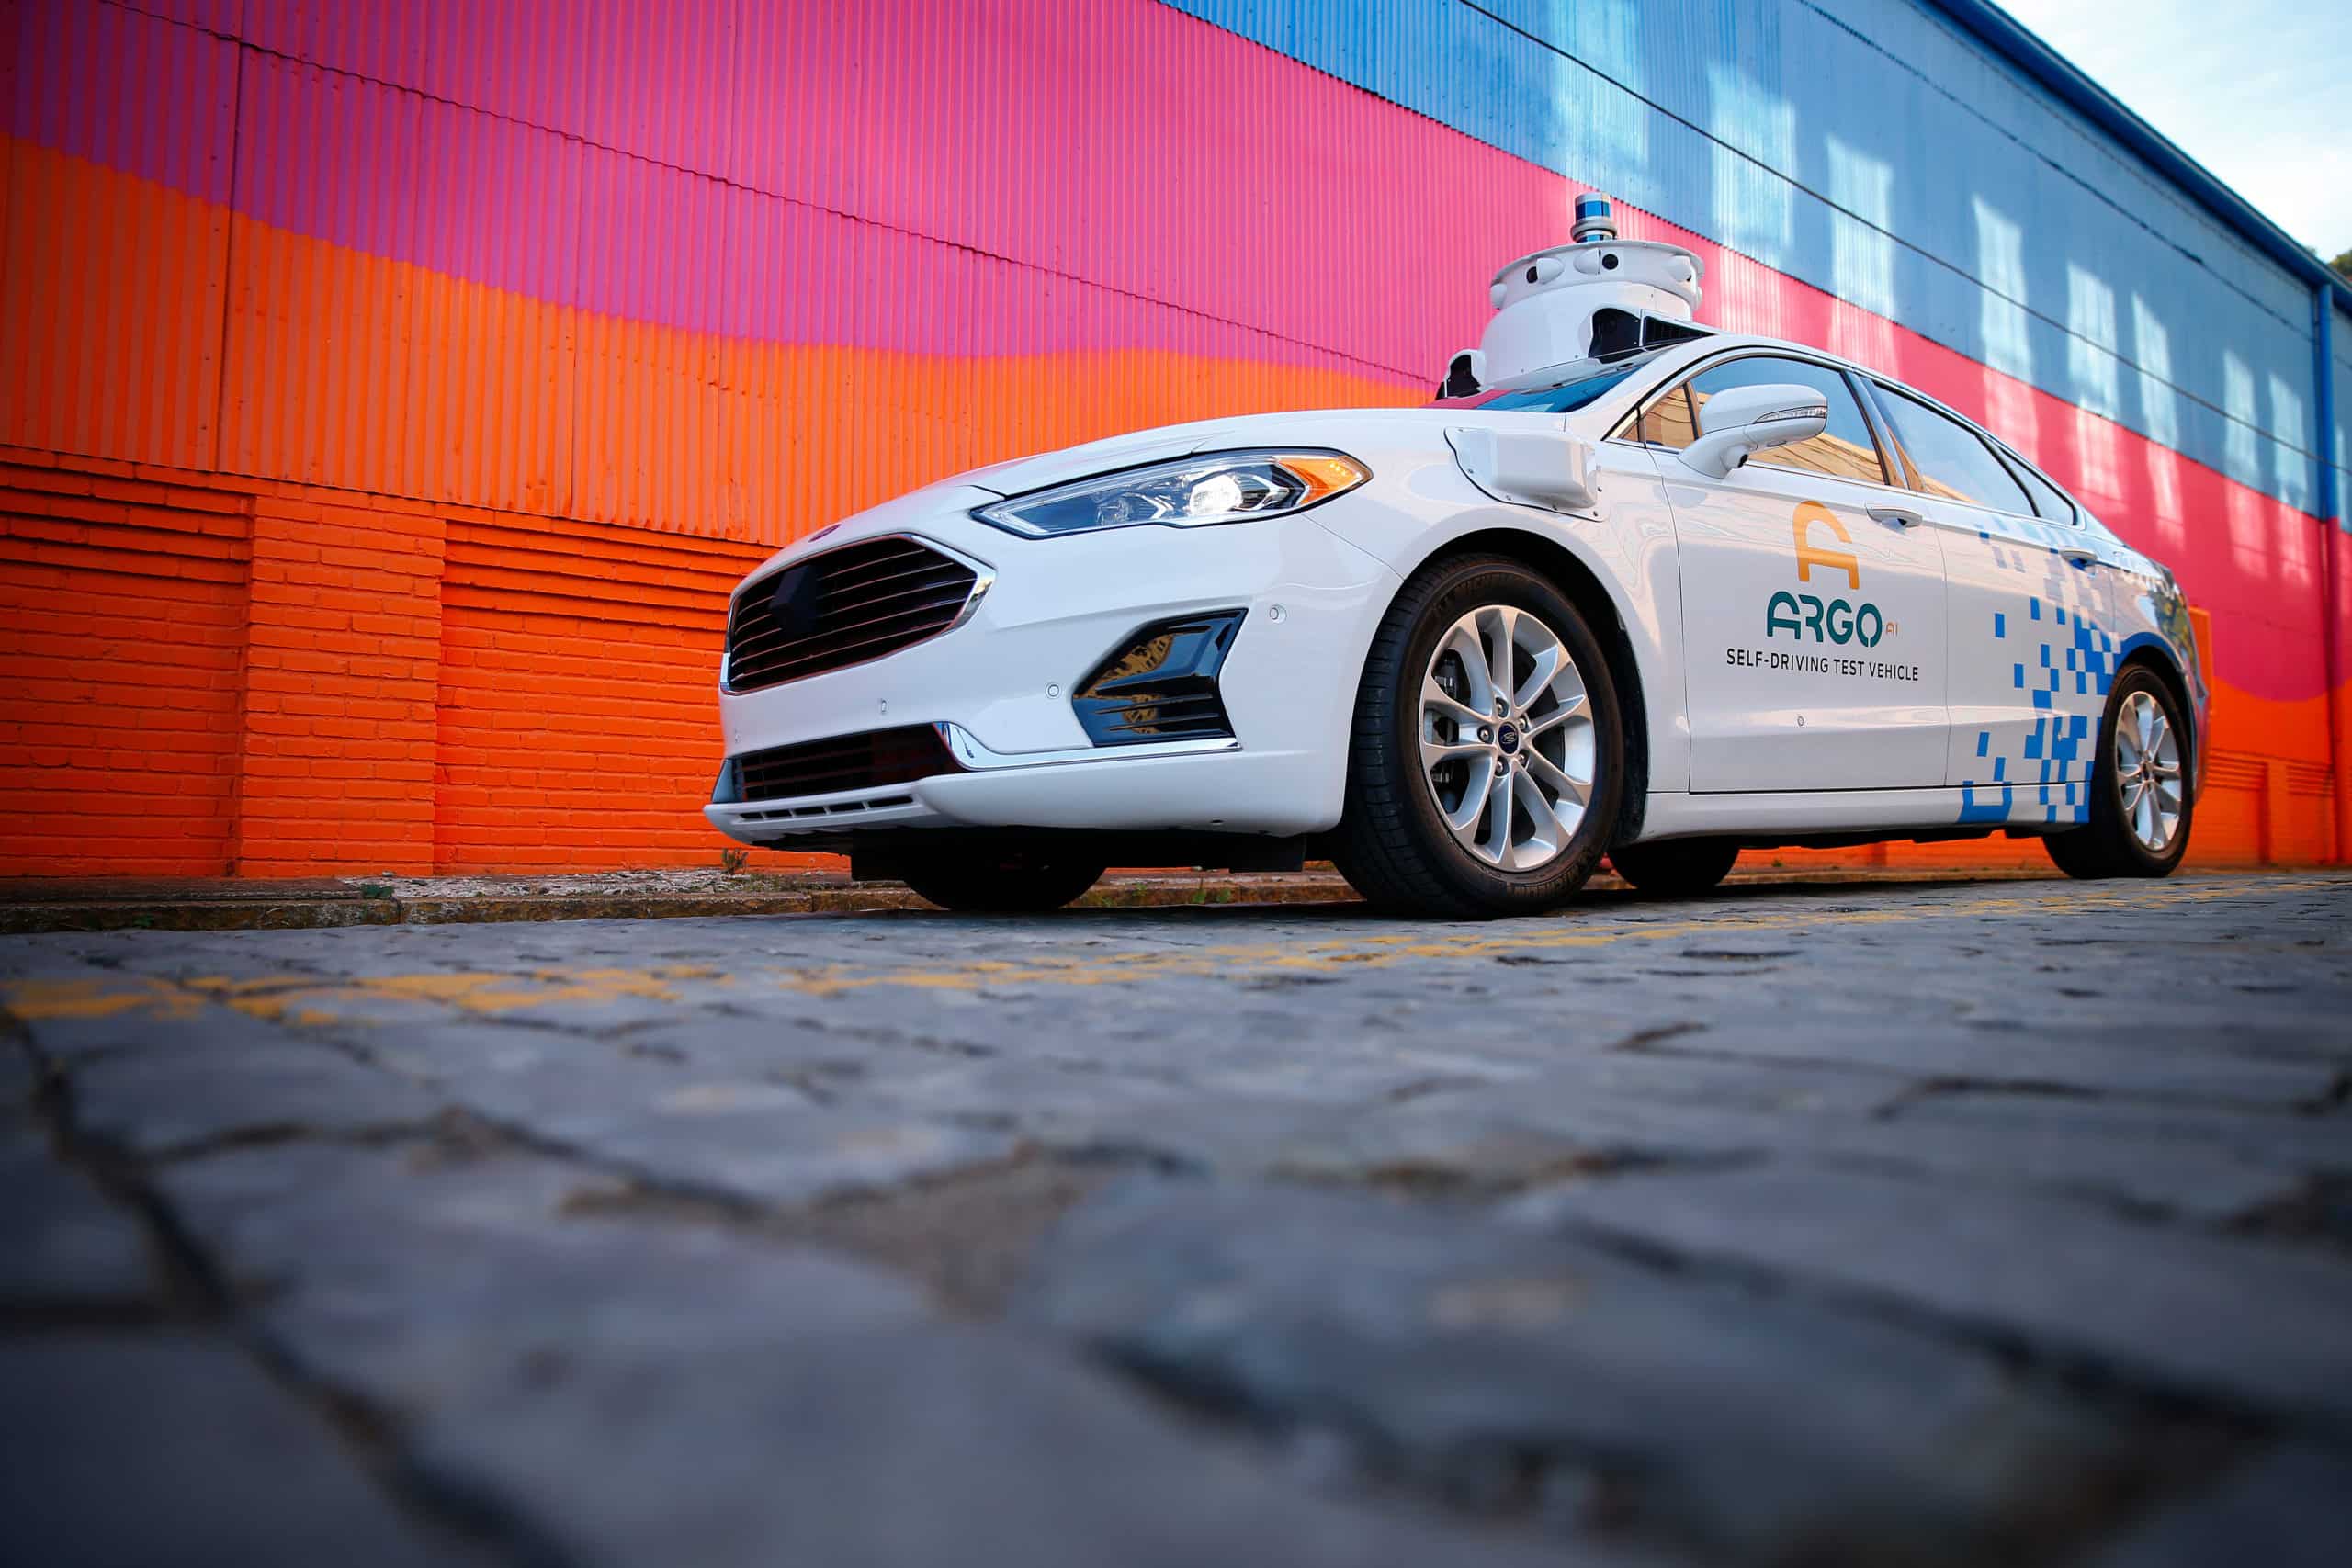 Une voiture Ford équipée de la technologie Argo.